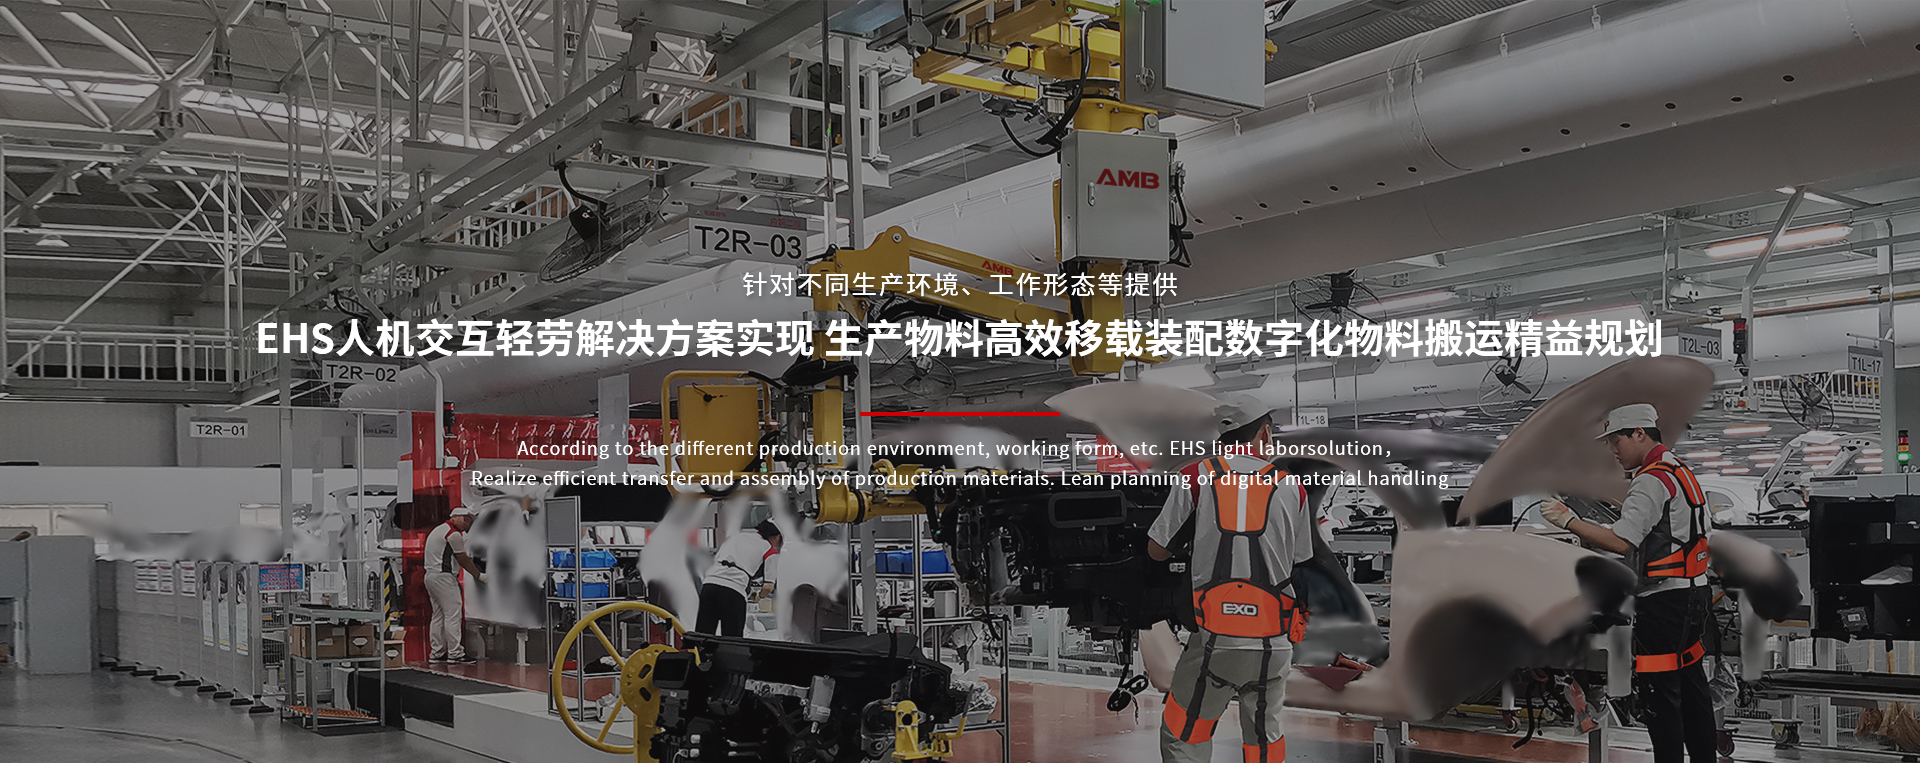 广州海同工业技术有限公司 物料搬运精益规划铝轨葫芦外骨骼